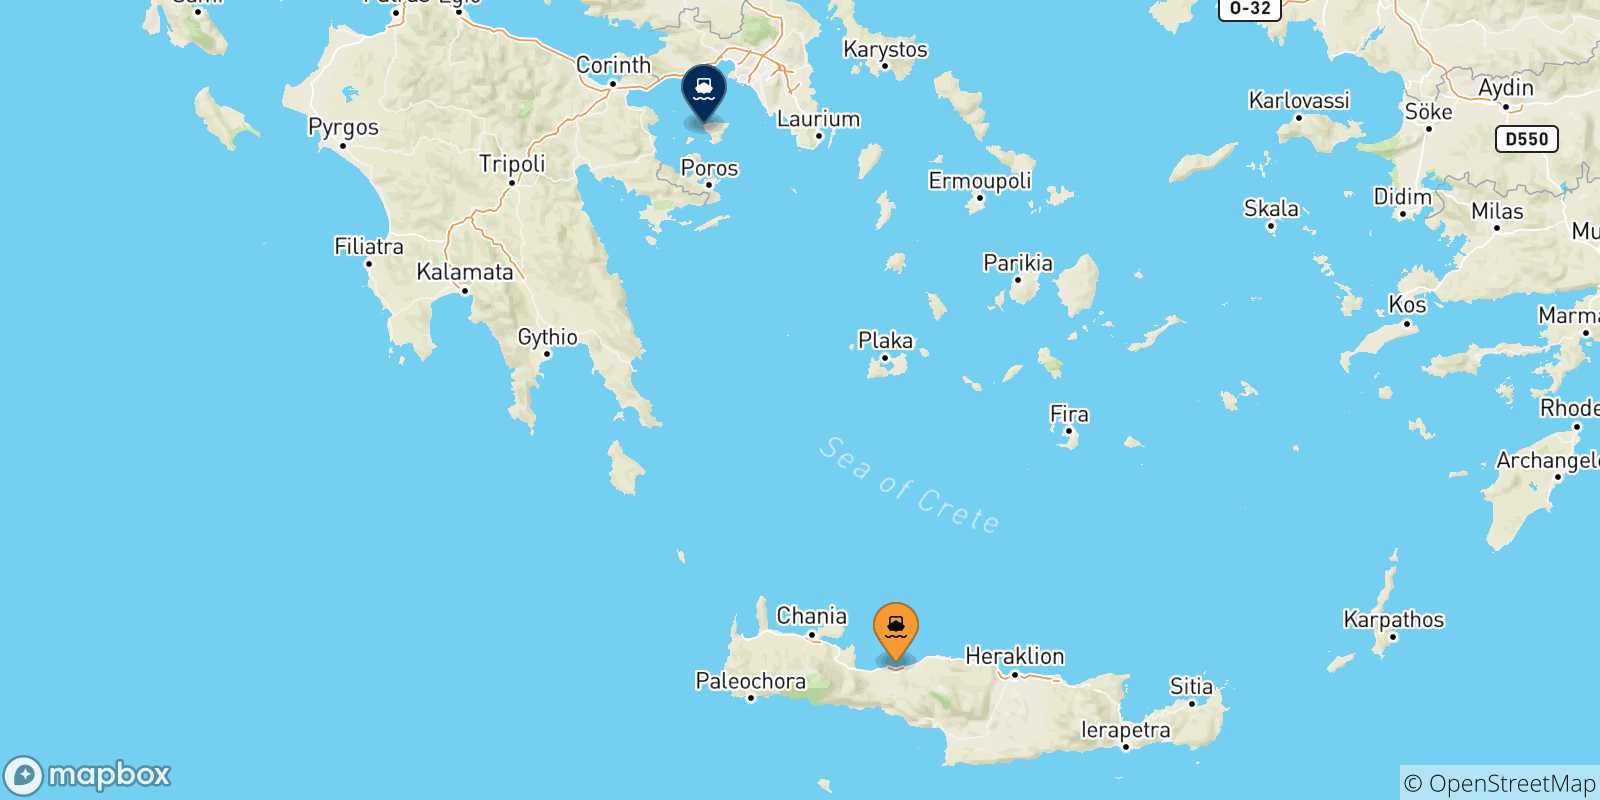 Mappa delle possibili rotte tra Myli (Agistri) e le Isole Saroniche